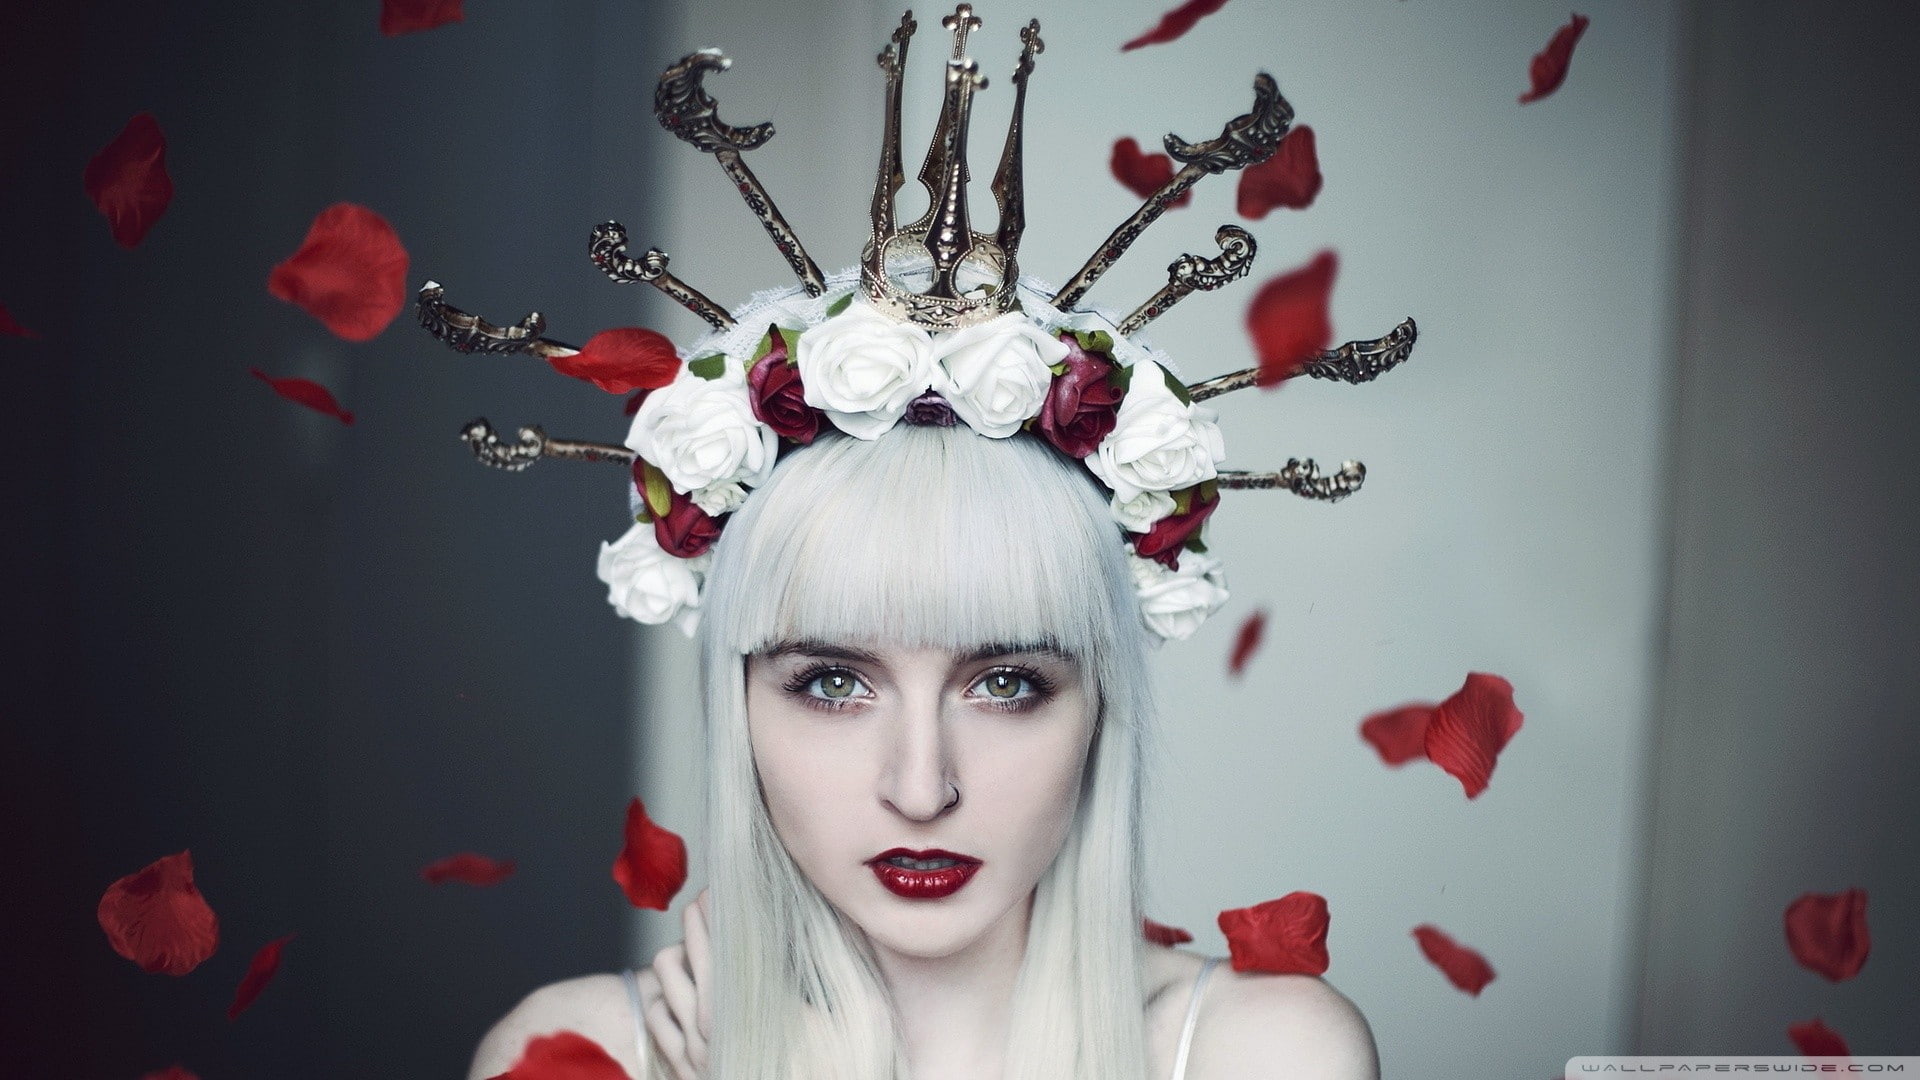 rose, white, fantasy art, women, model, fantasy girl, crown